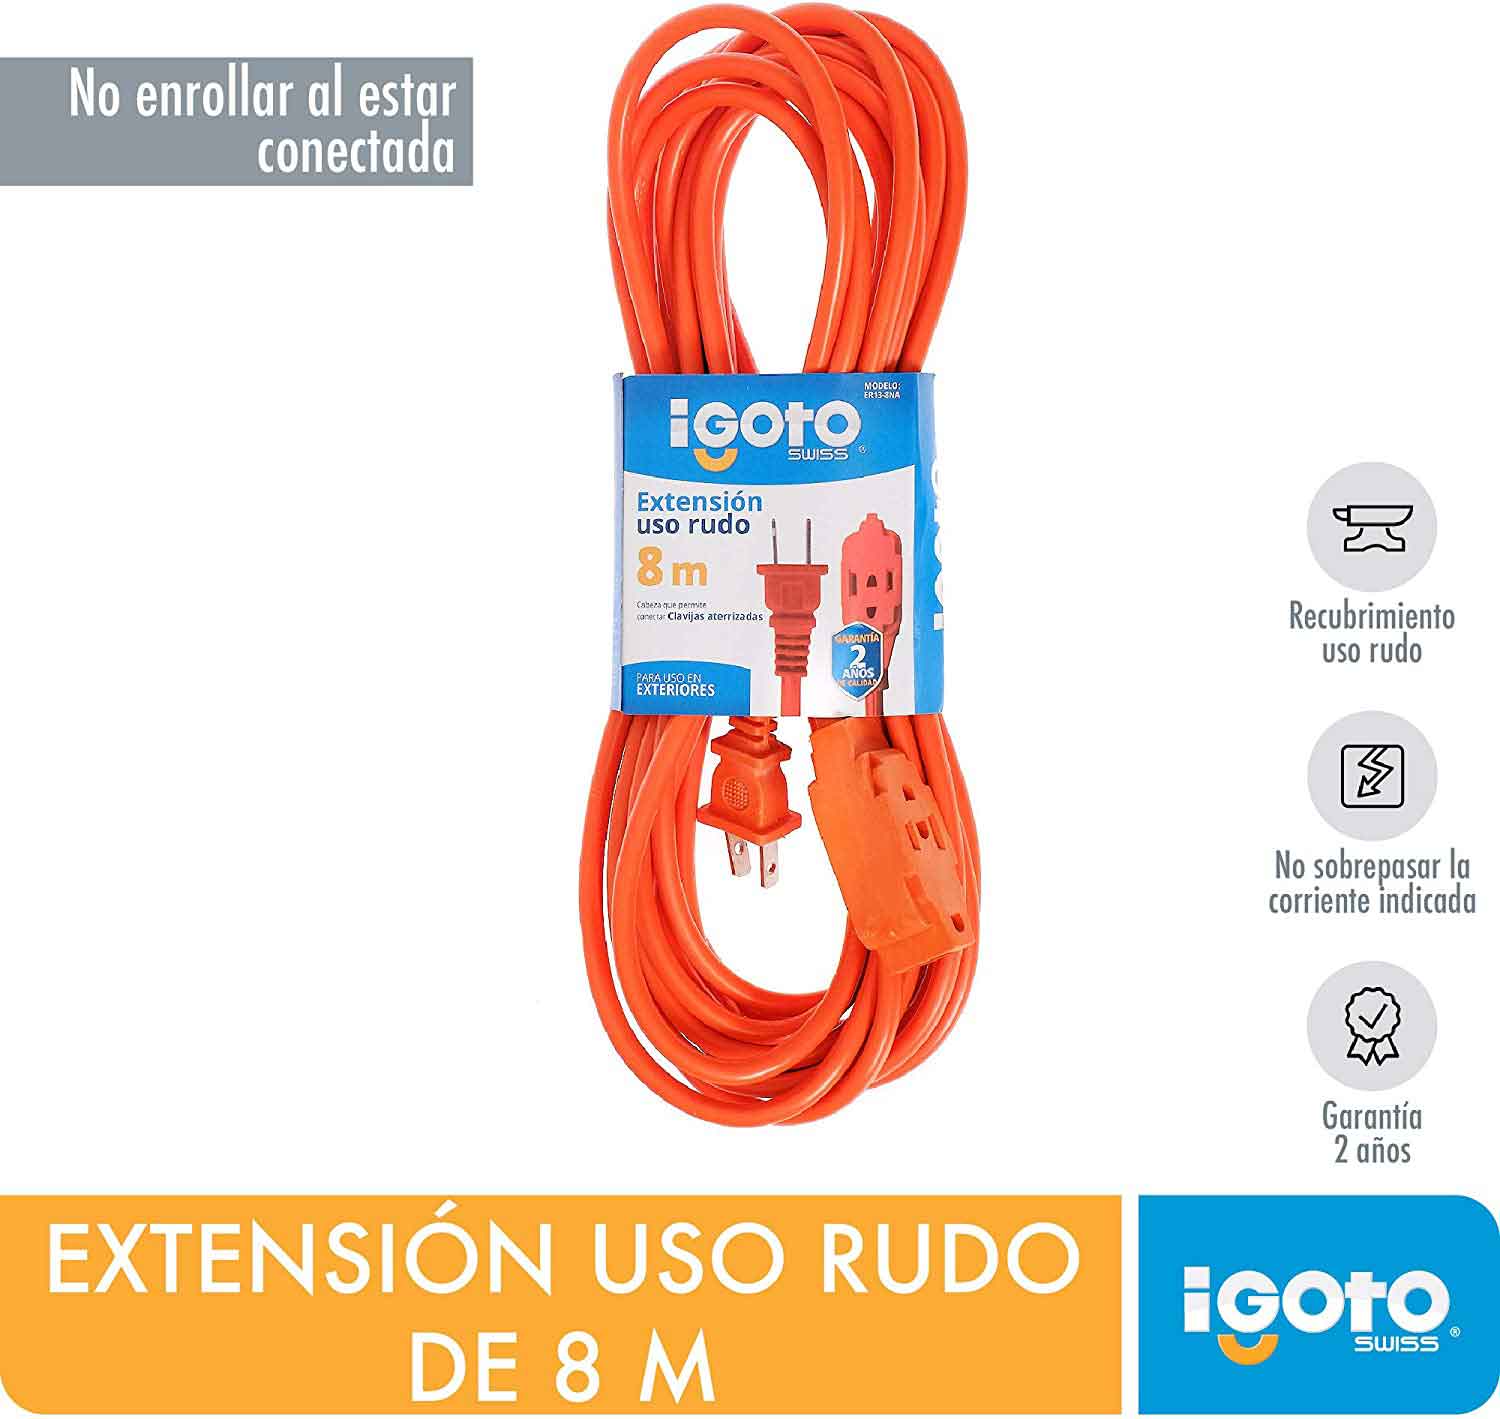 Extension Uso Rudo Naranja 16Awg 8M Igoto IGOTO Ferreabasto